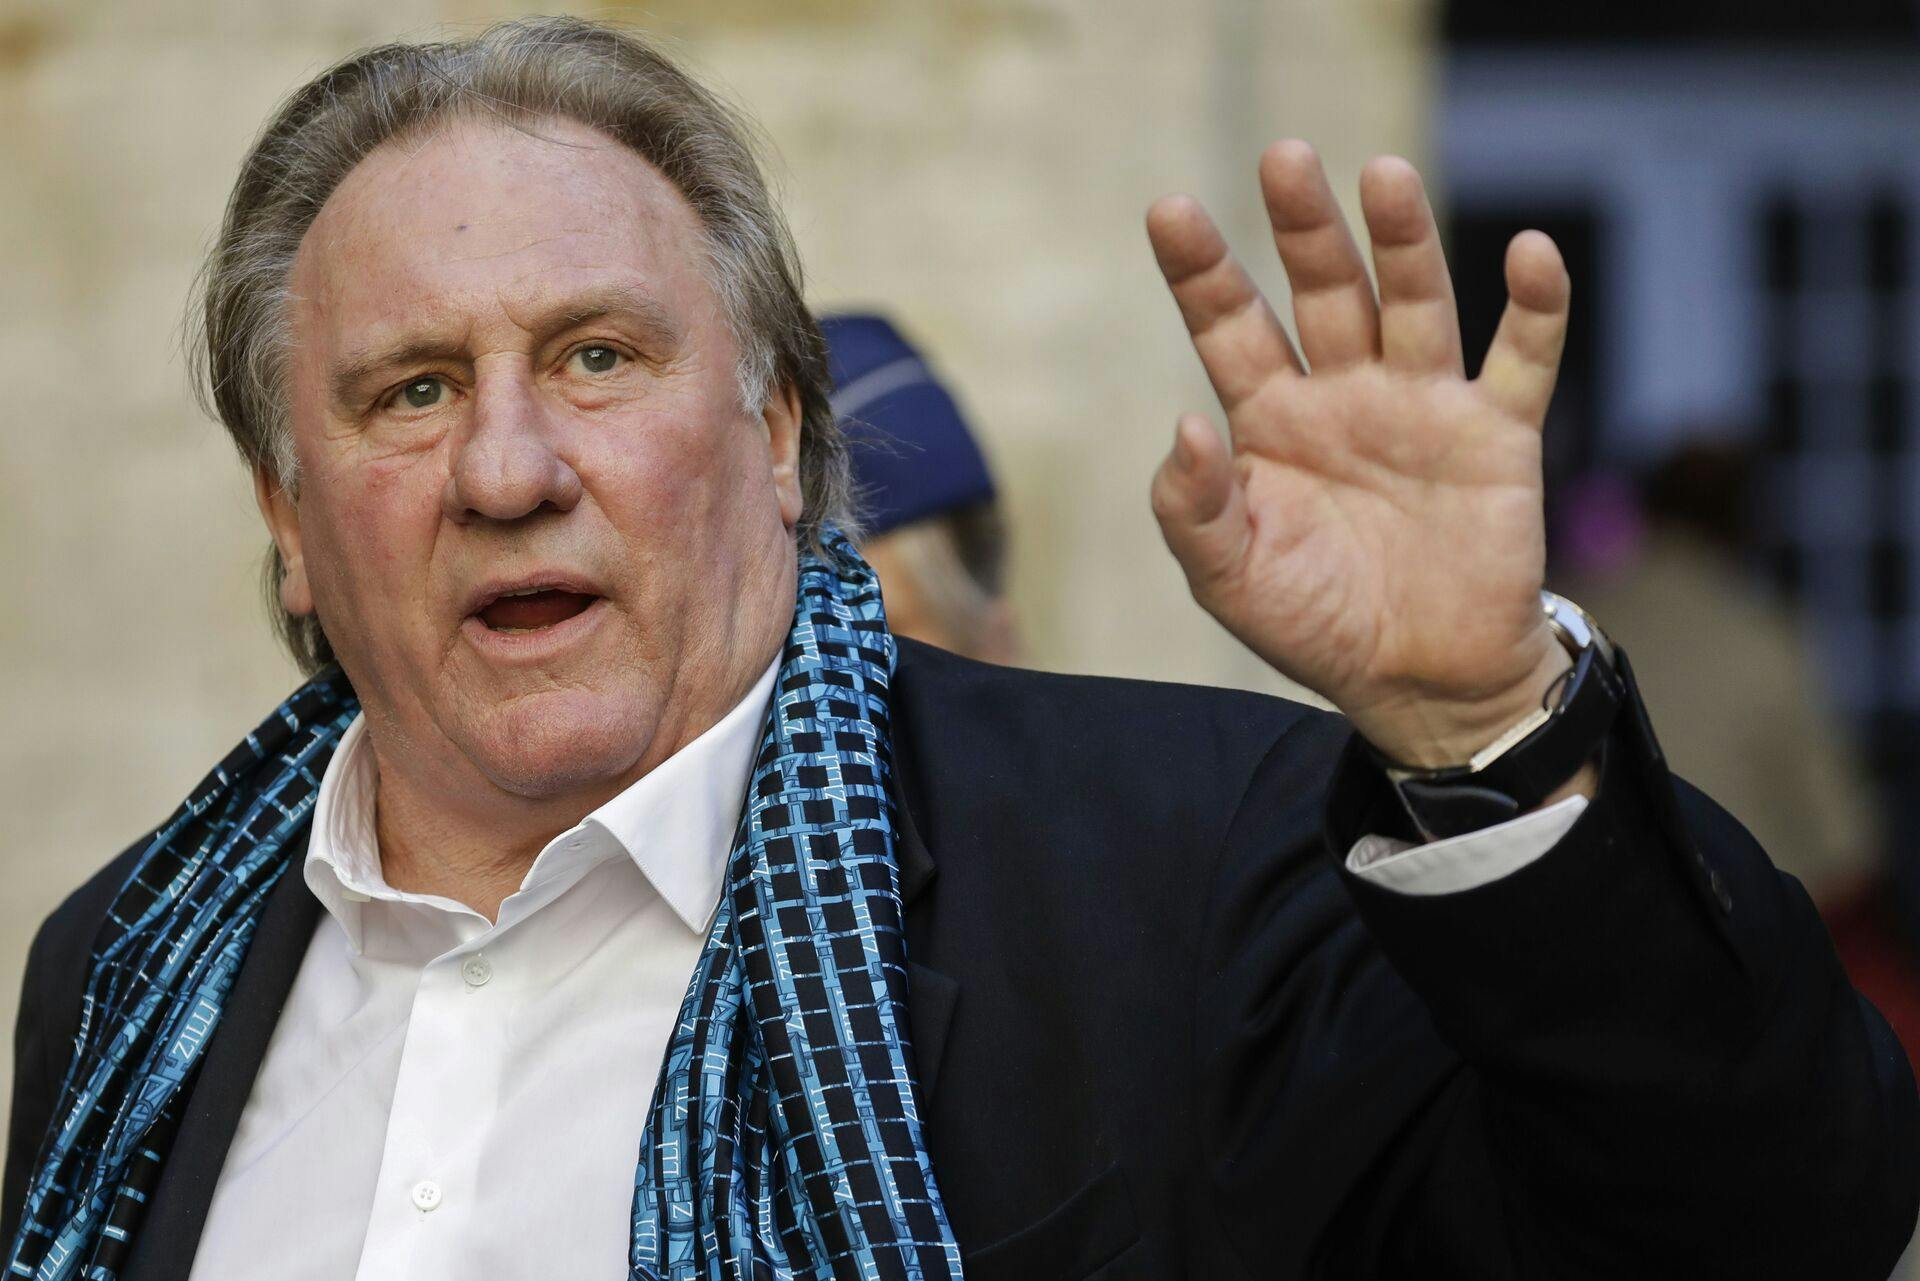 I april kunne det undersøgende medie Mediepart fortælle, at 13 kvinder anklagede Gérard Depardieu for enten overgreb eller voldtægt.